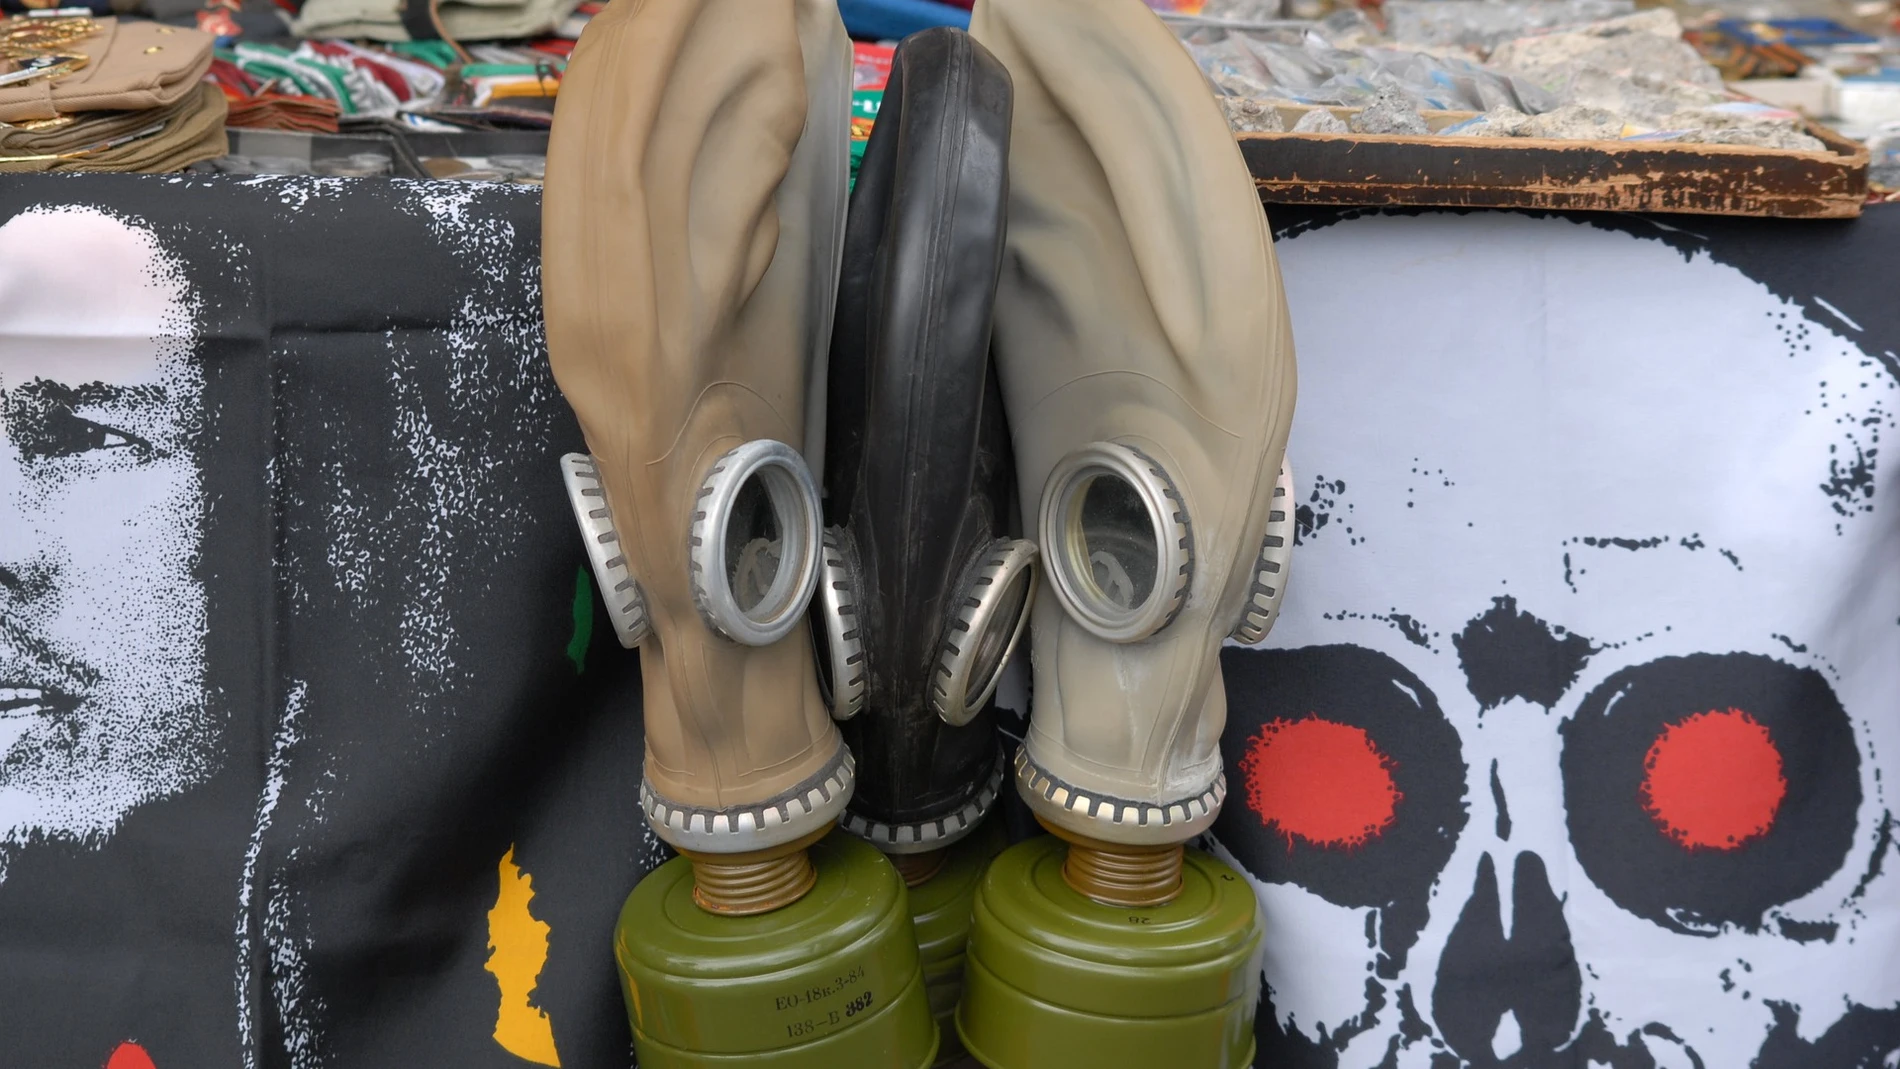 Imagen de dos máscaras de gas.